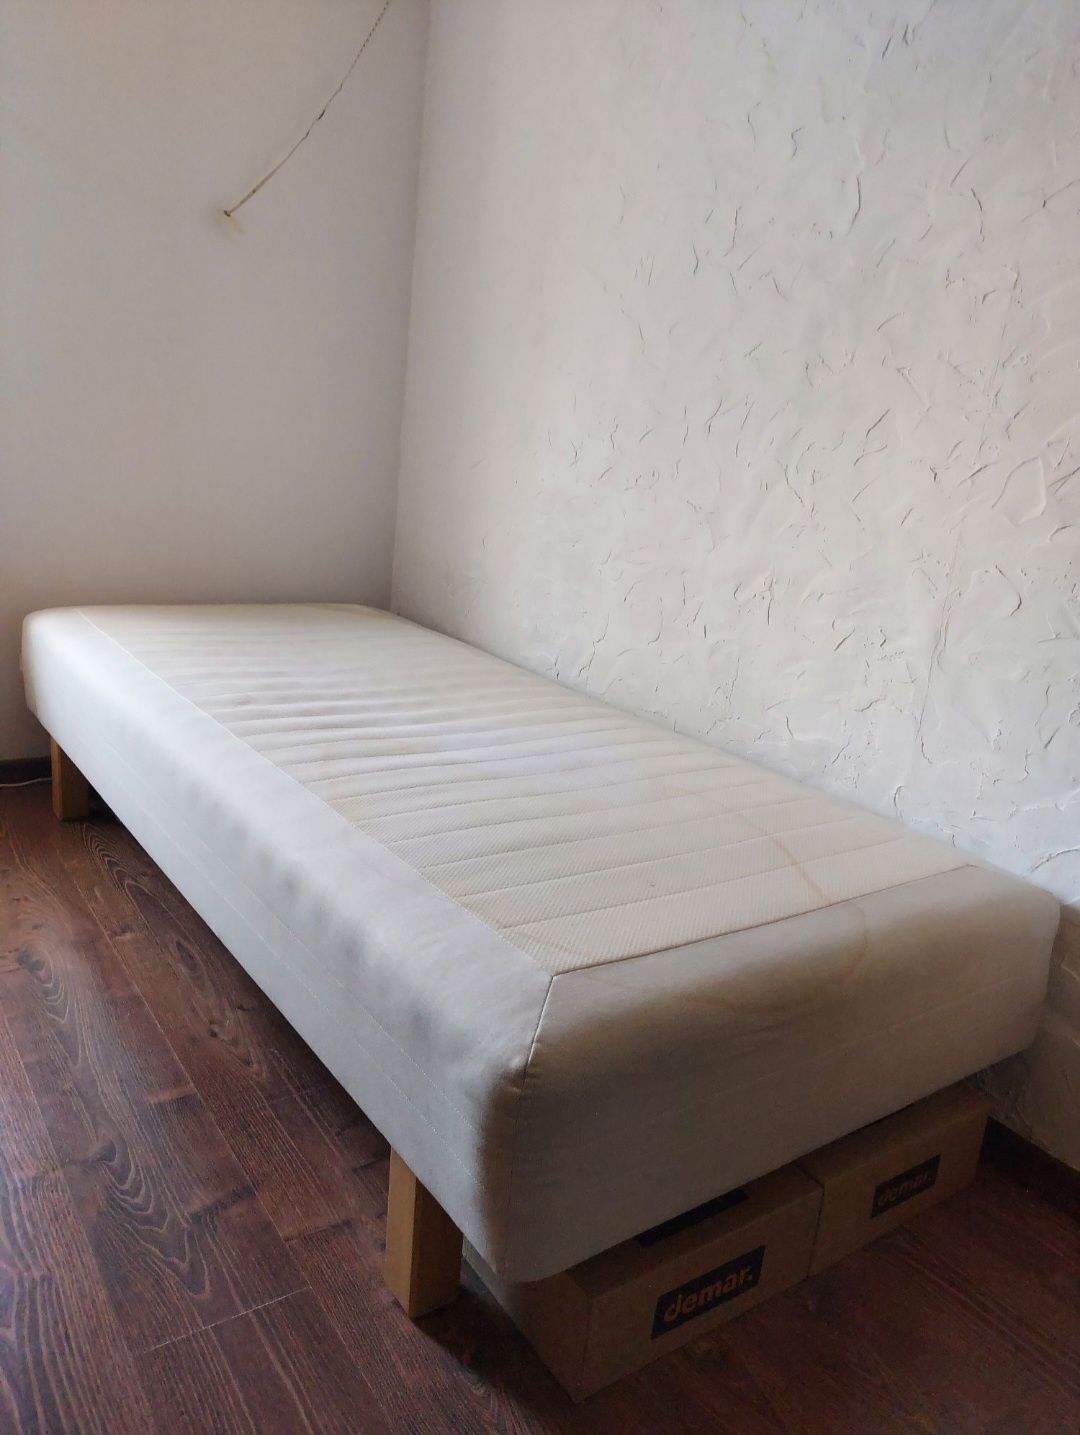 OKAZJA! Wygodne łóżko z drewnianym stelażem materac nogi 1/2 osobowe